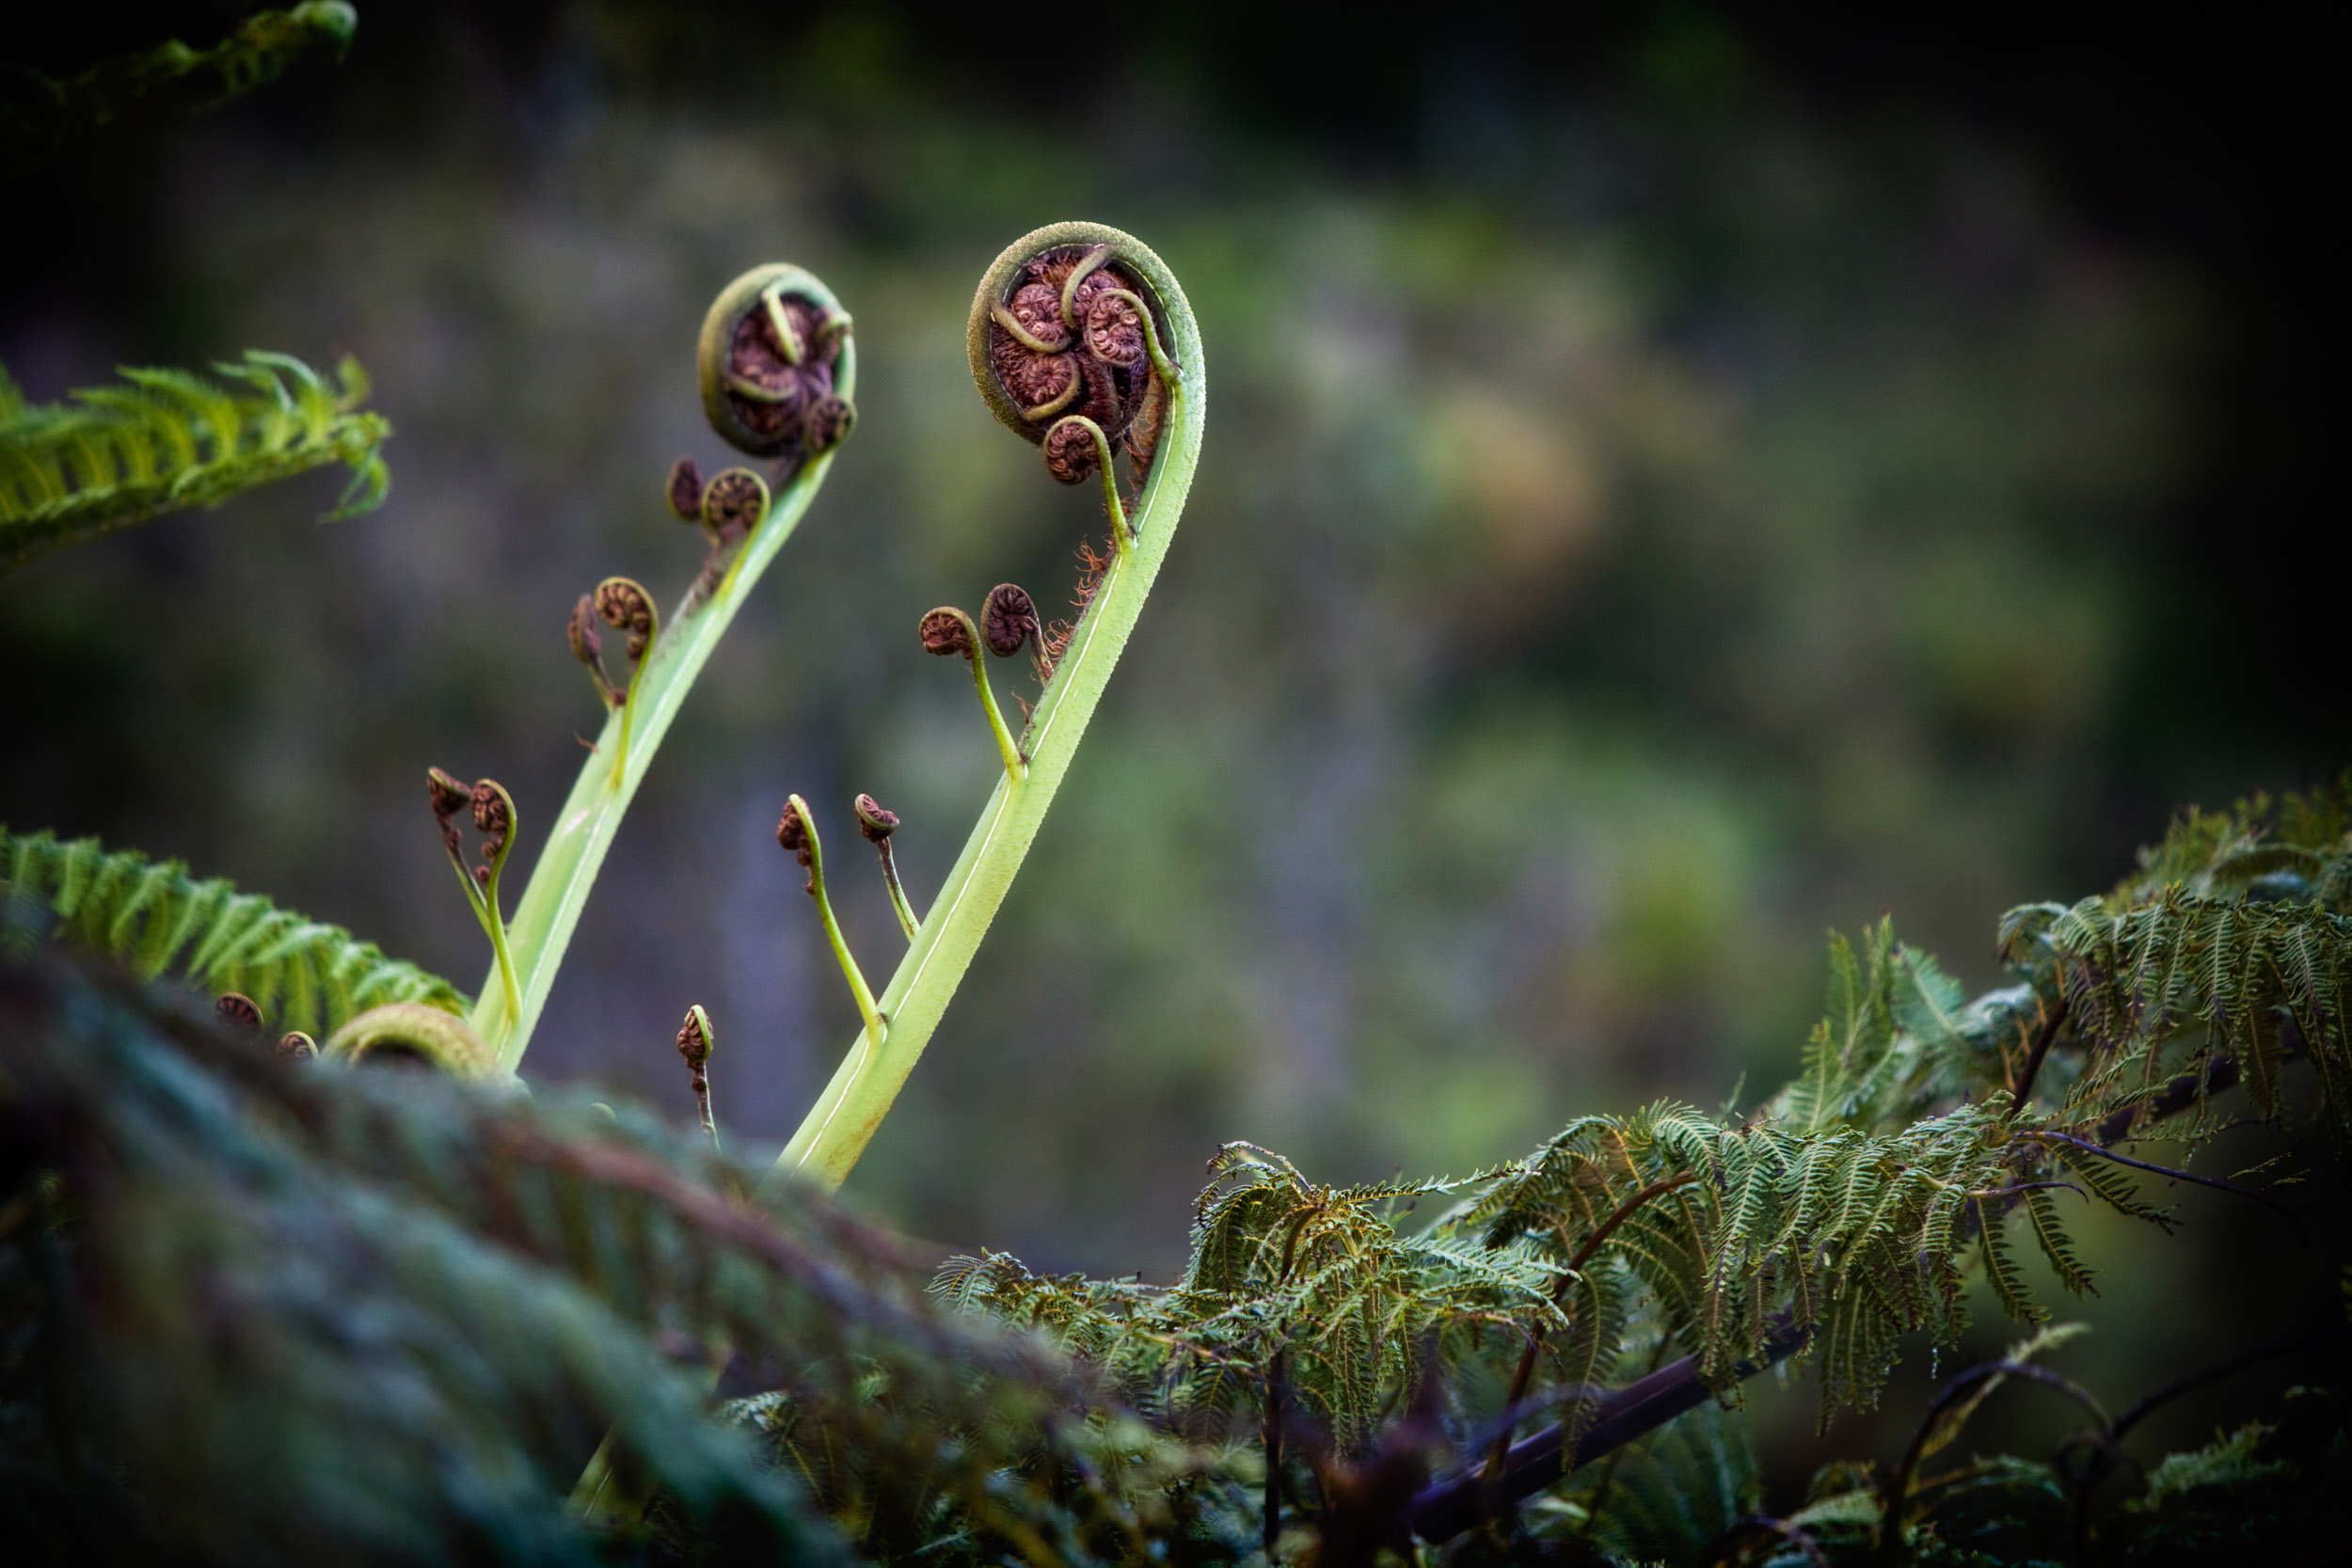 Silver fern reach skyward in a New Zealand forest